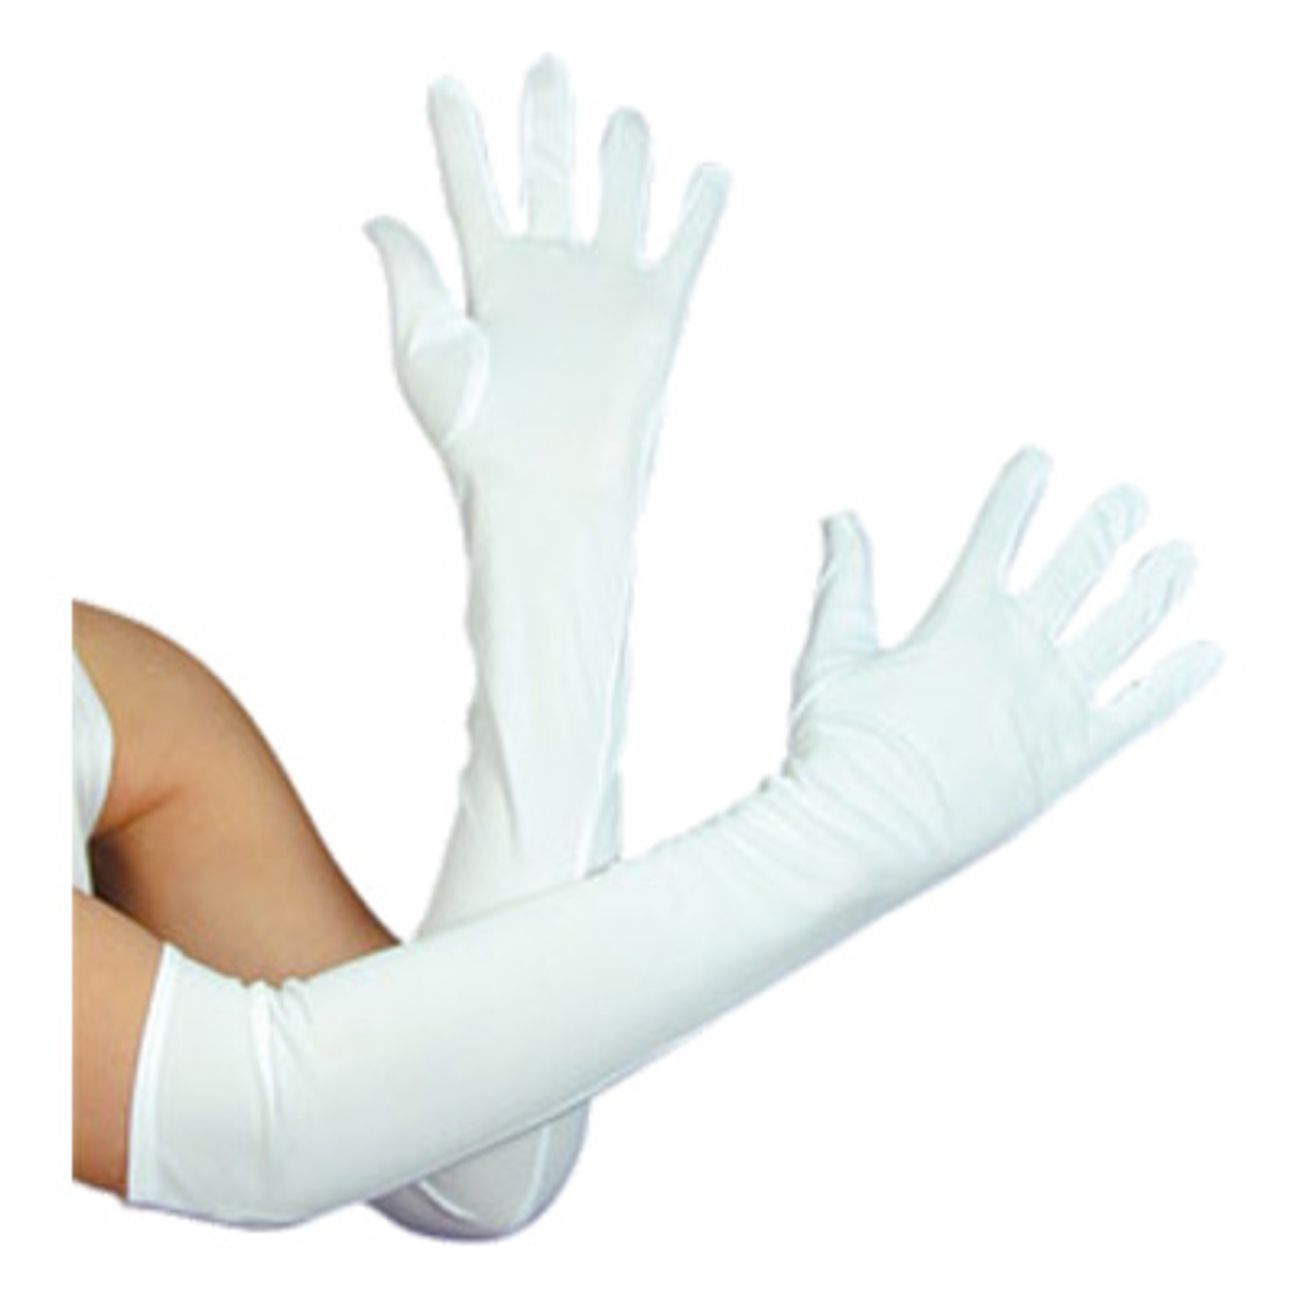 В мешке 24 белых перчаток. Перчатки длинные до плеча. Перчатки парадные белые. Длинные белые тканевые перчатки. Белые длинные перчатки мужские.